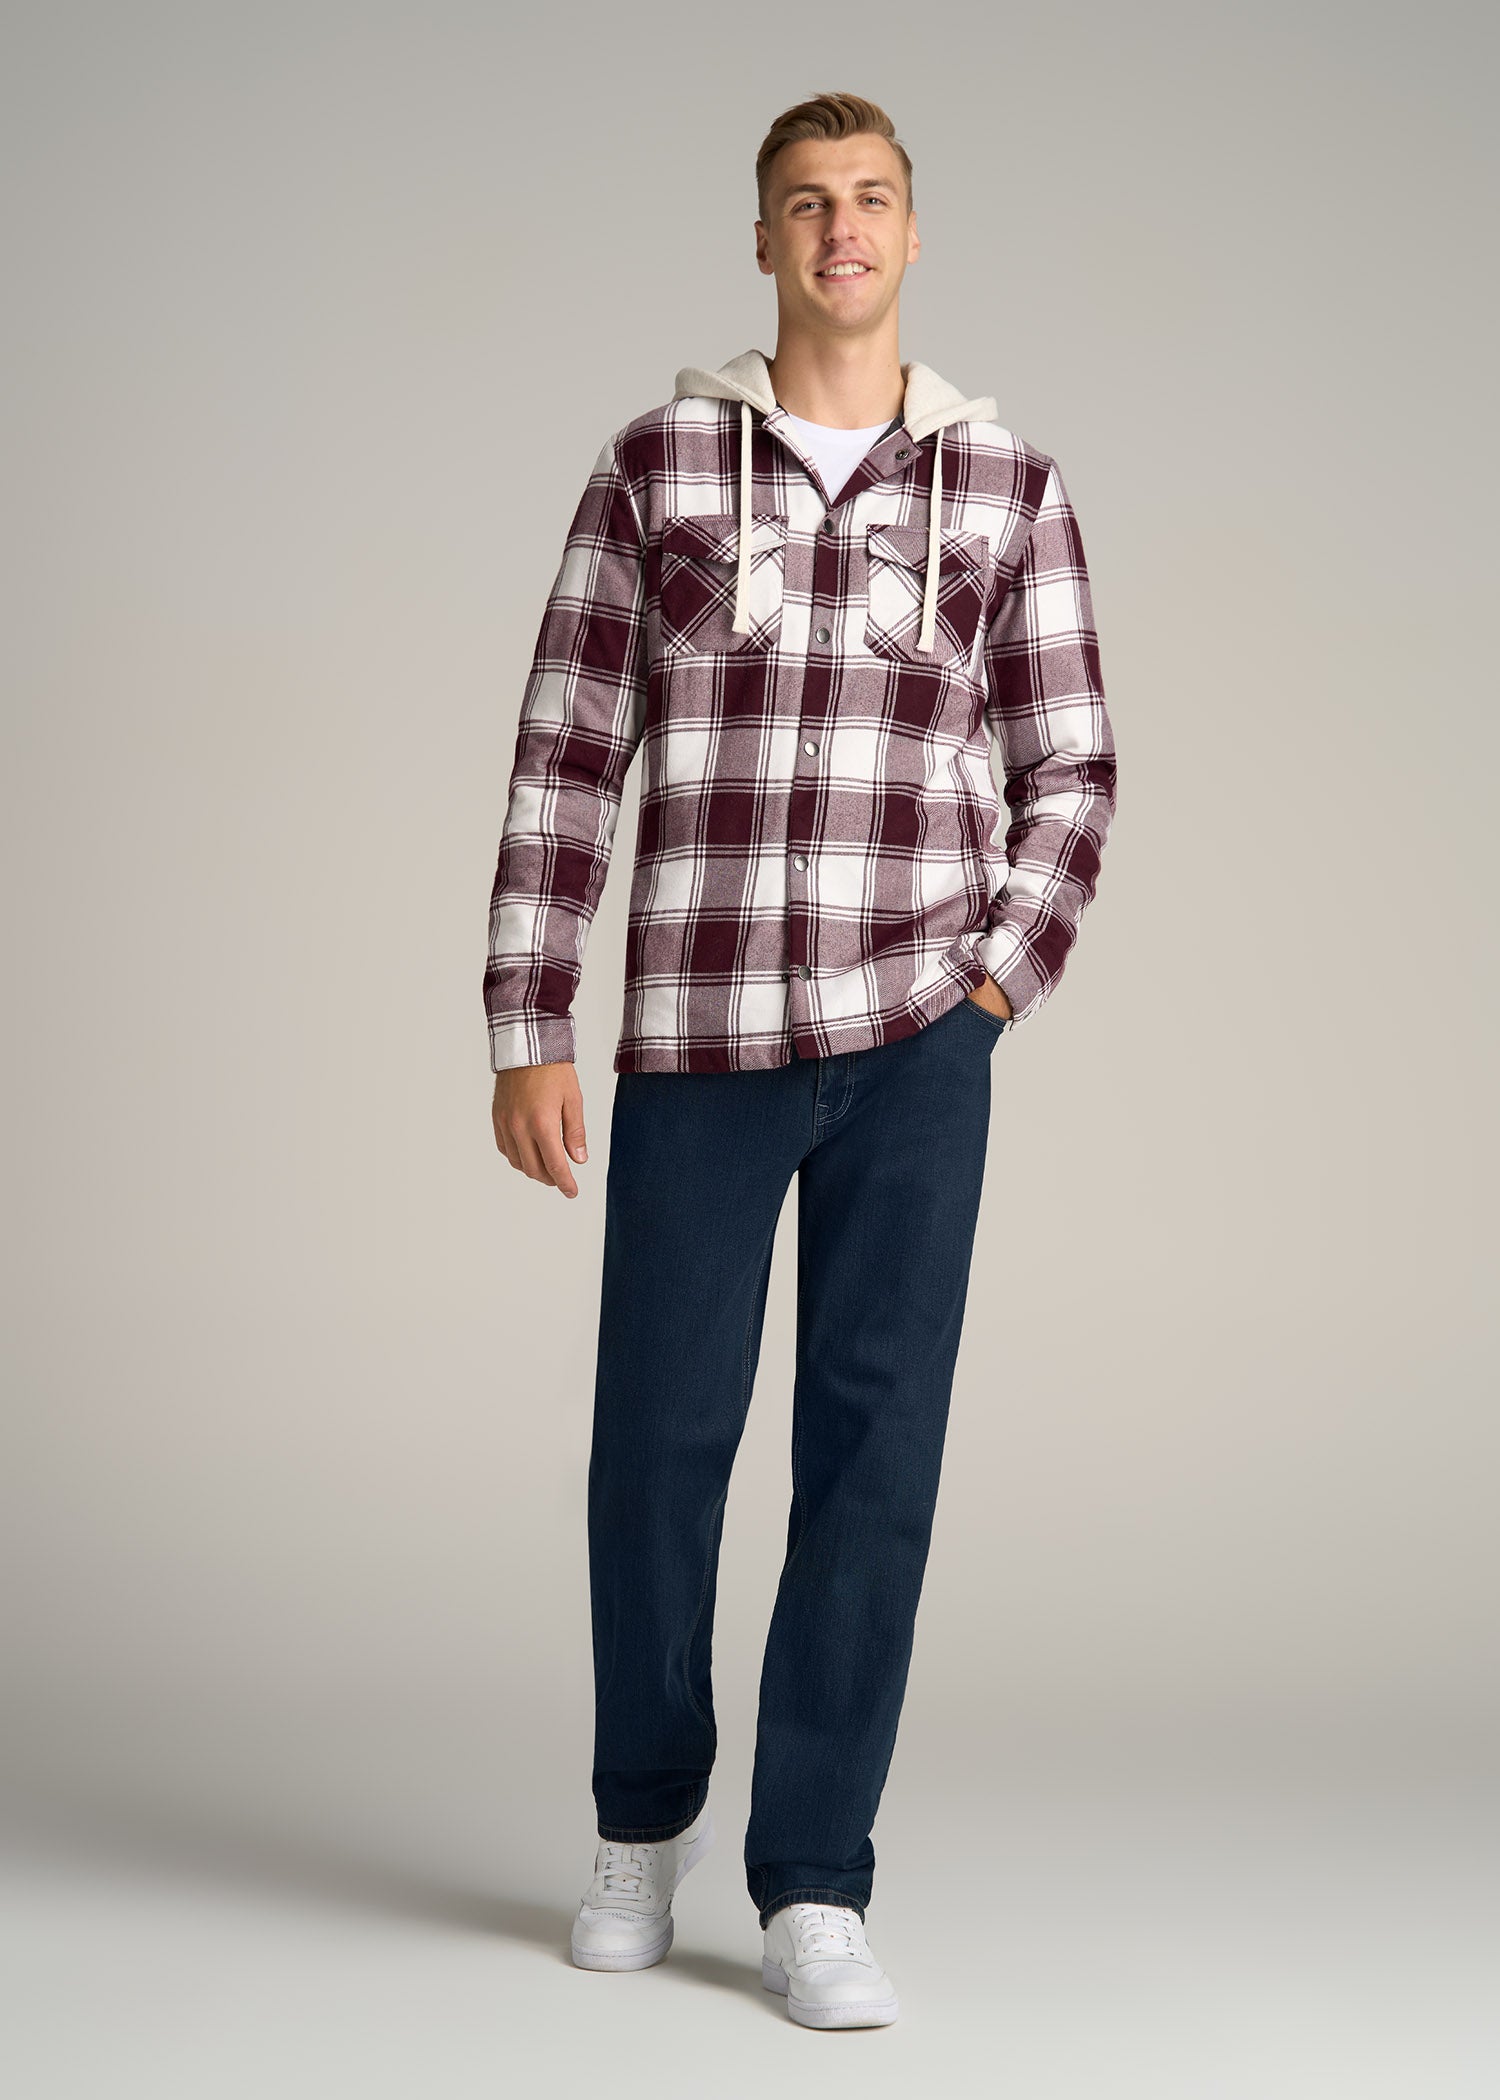 Lee Men's Flannel Shirt Jacket